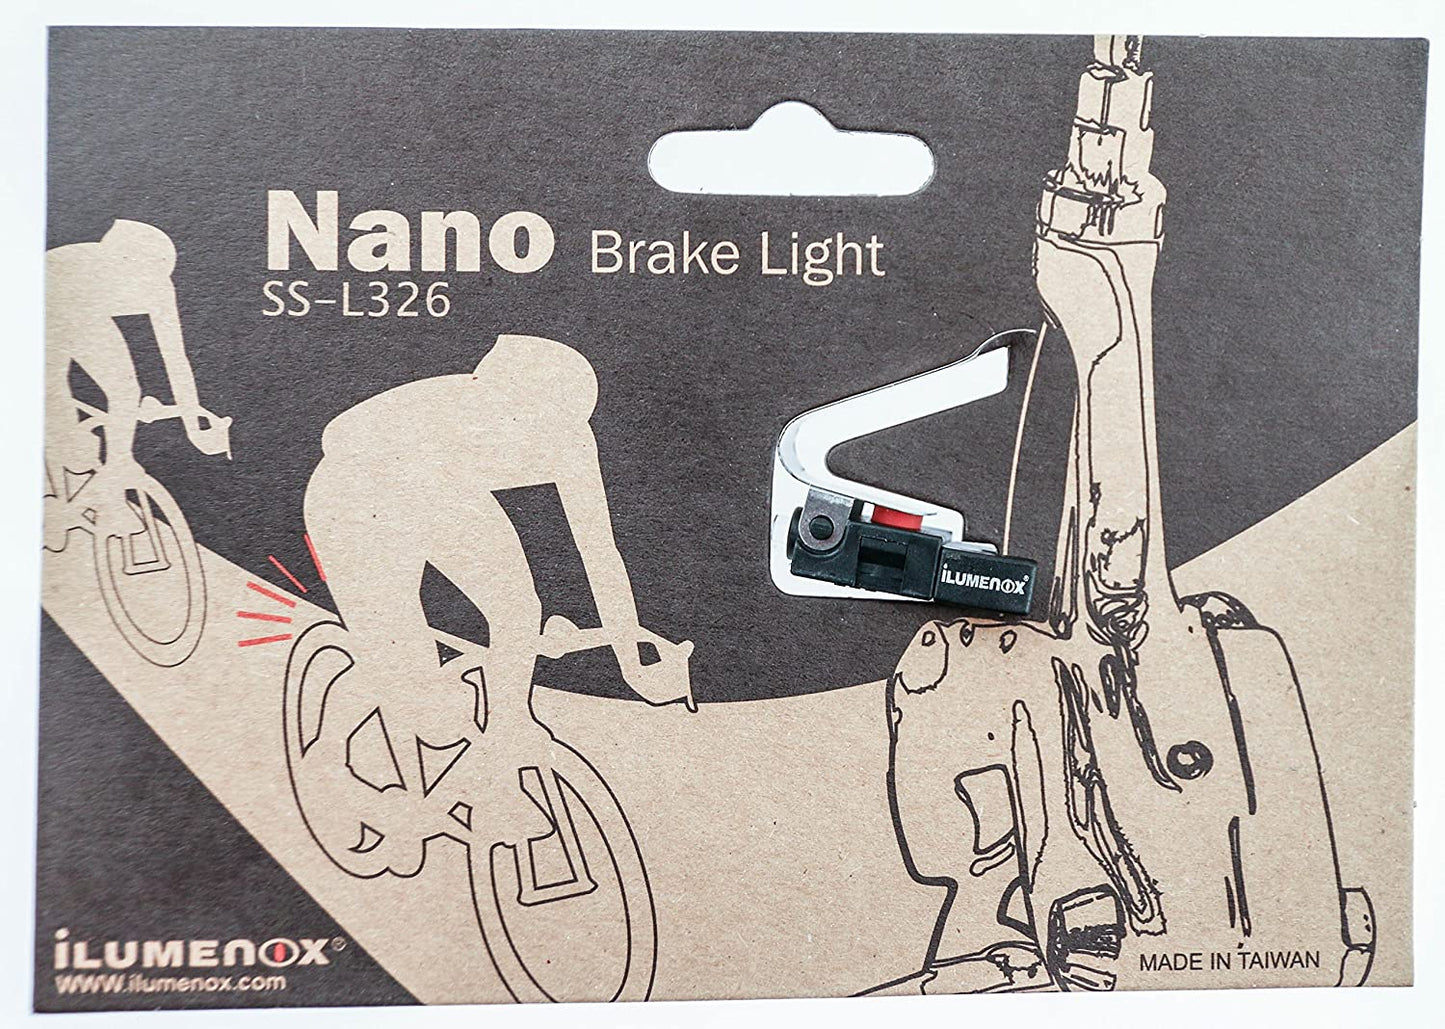 Nano Brake Light